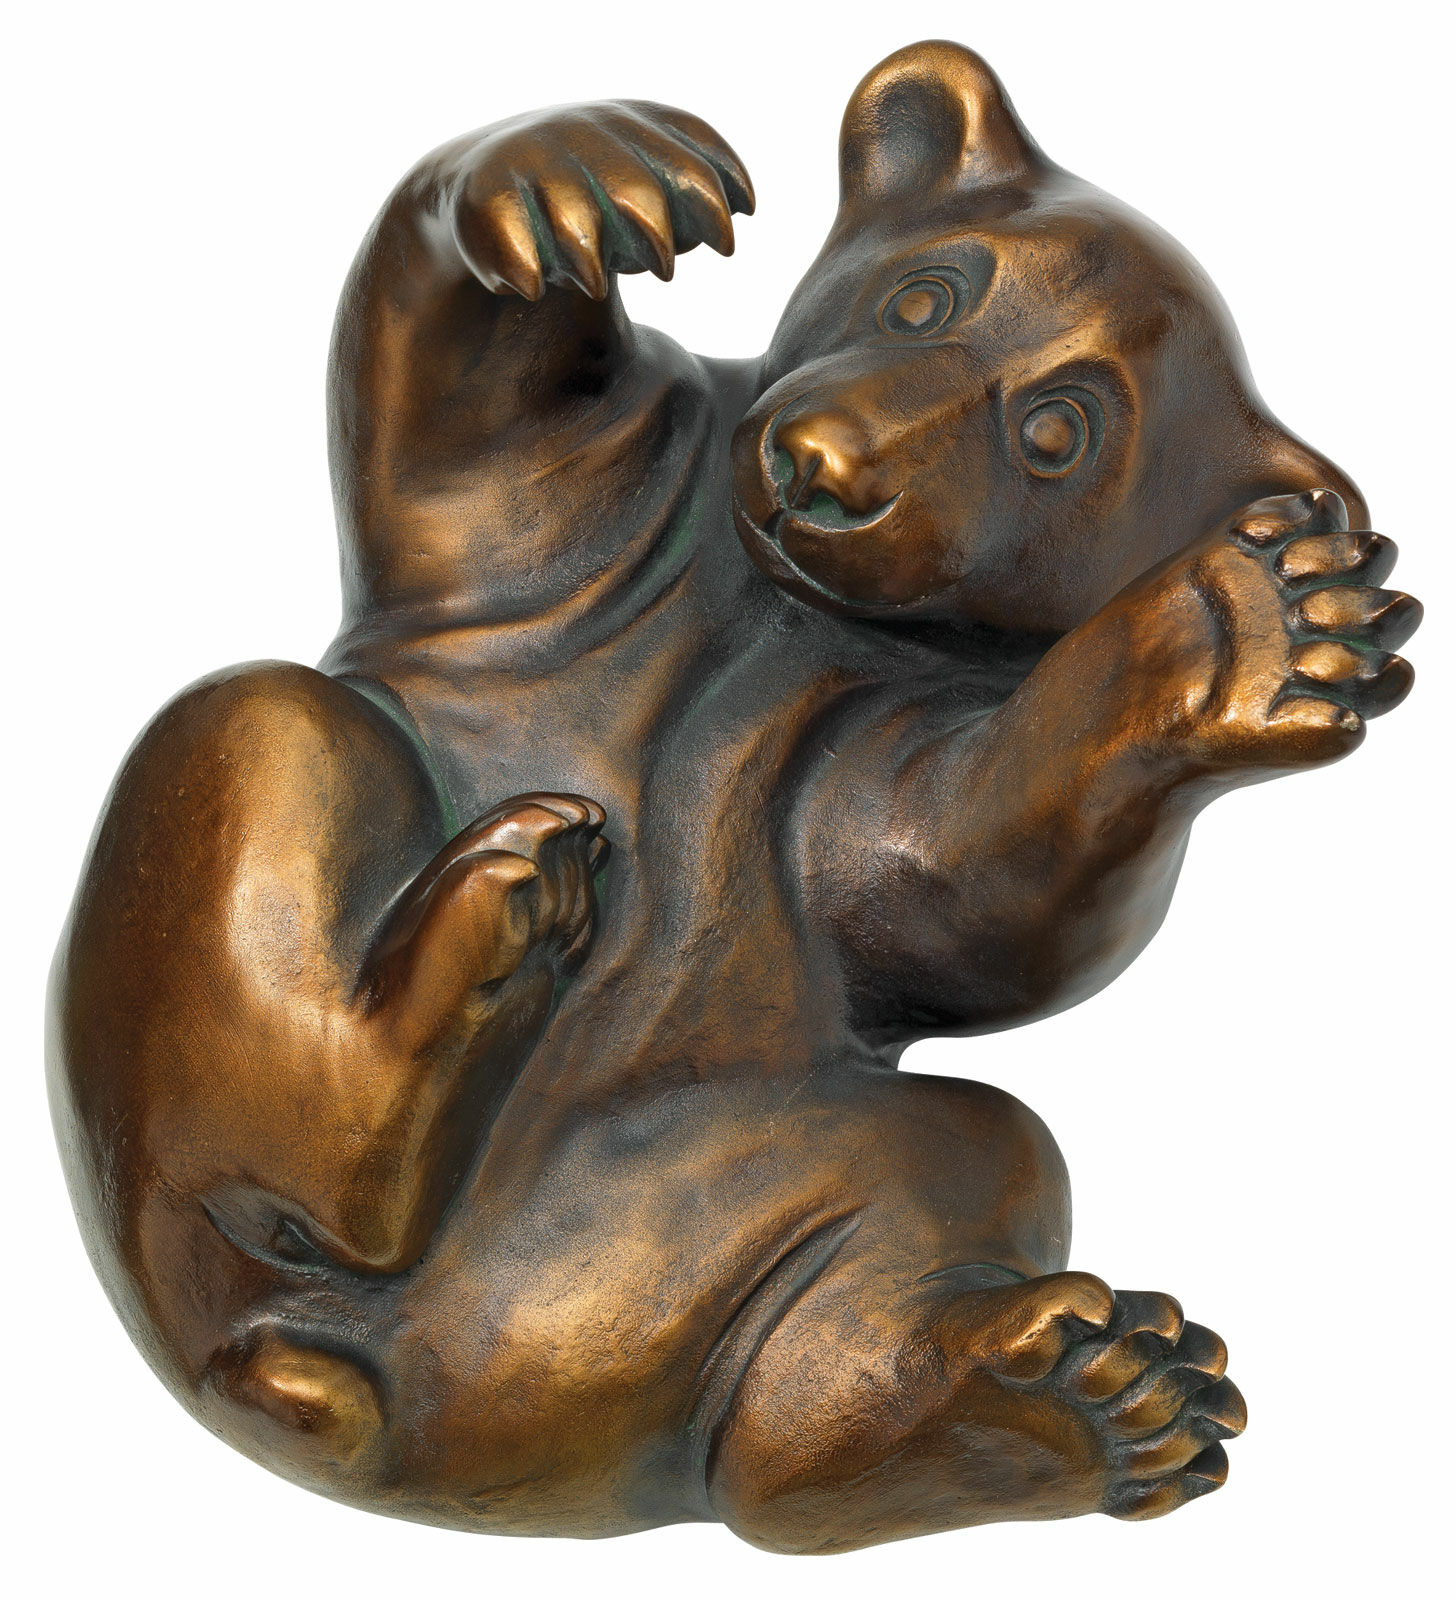 Skulptur "Bärenjunges", Version in Kunstbronze von Jagna Weber